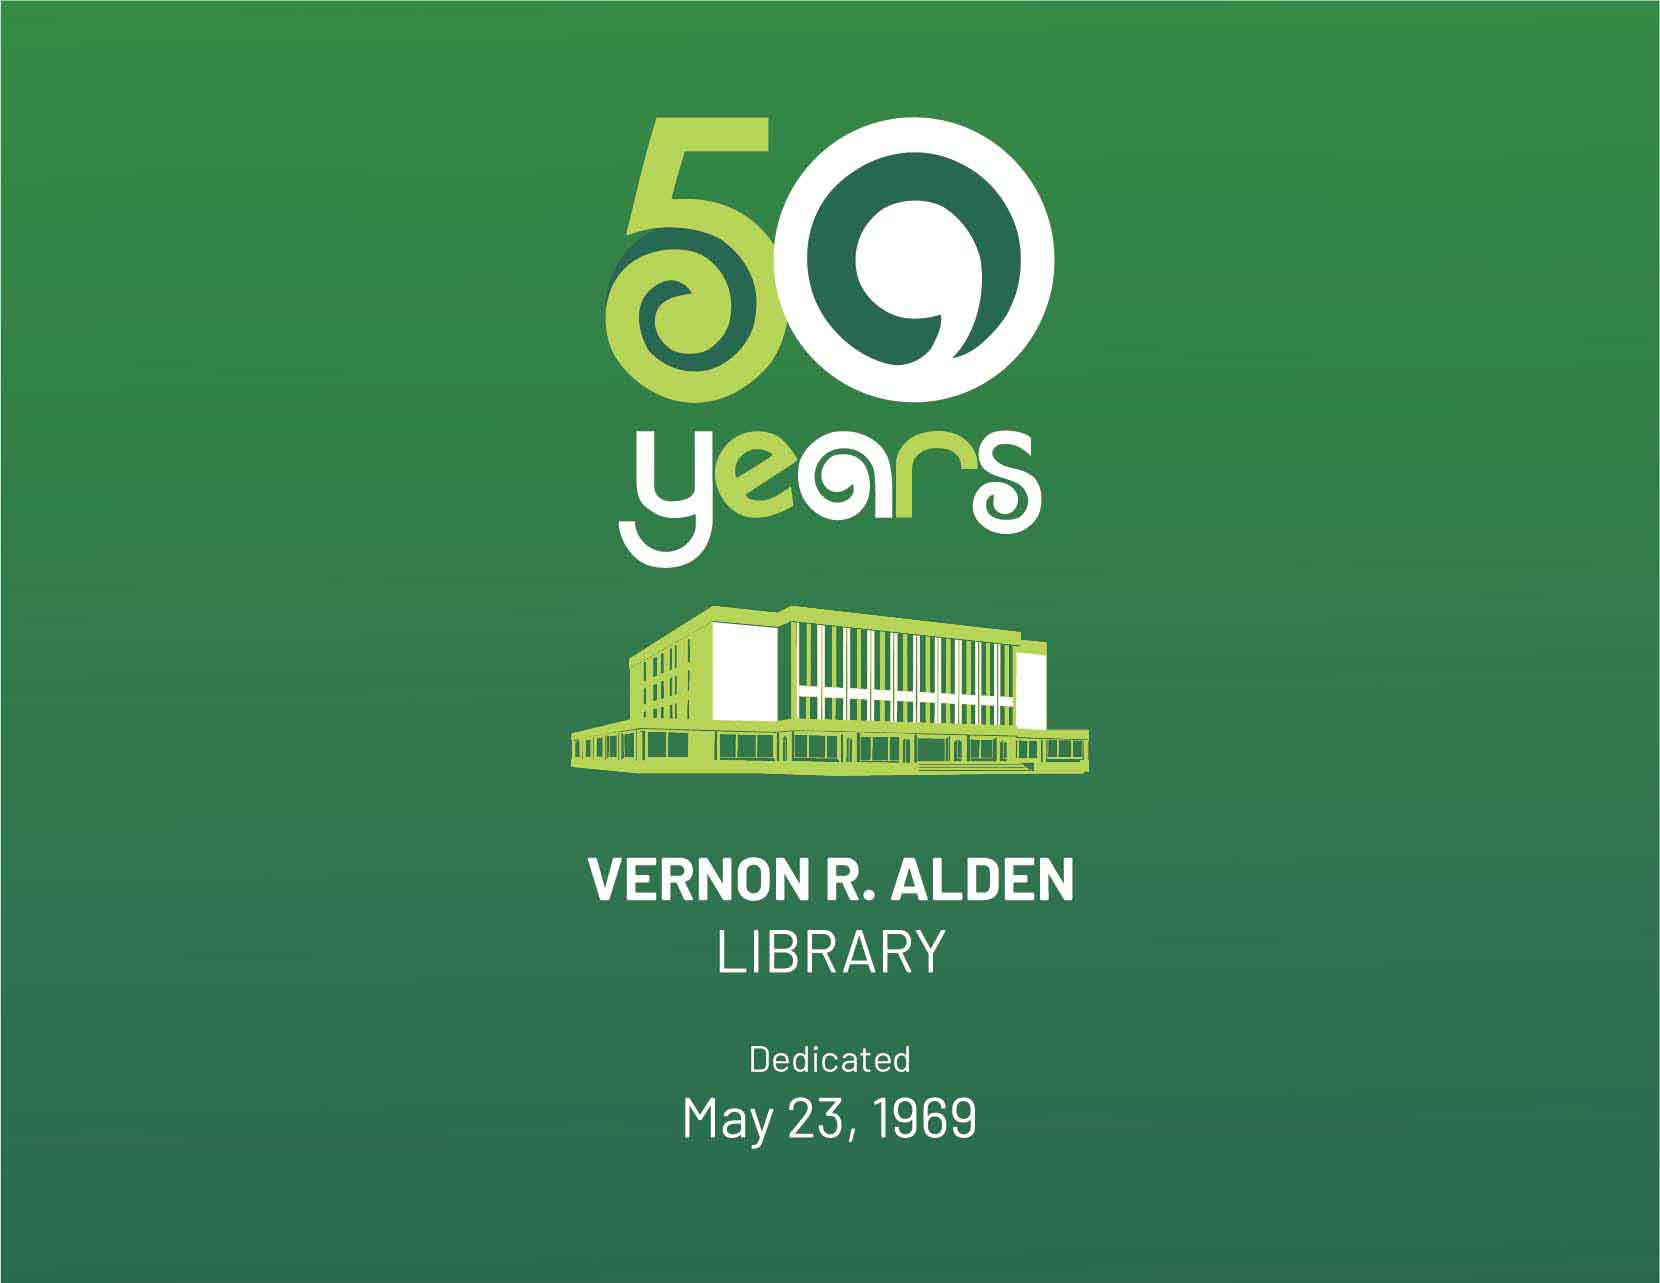  Alden's 50th anniversary logo